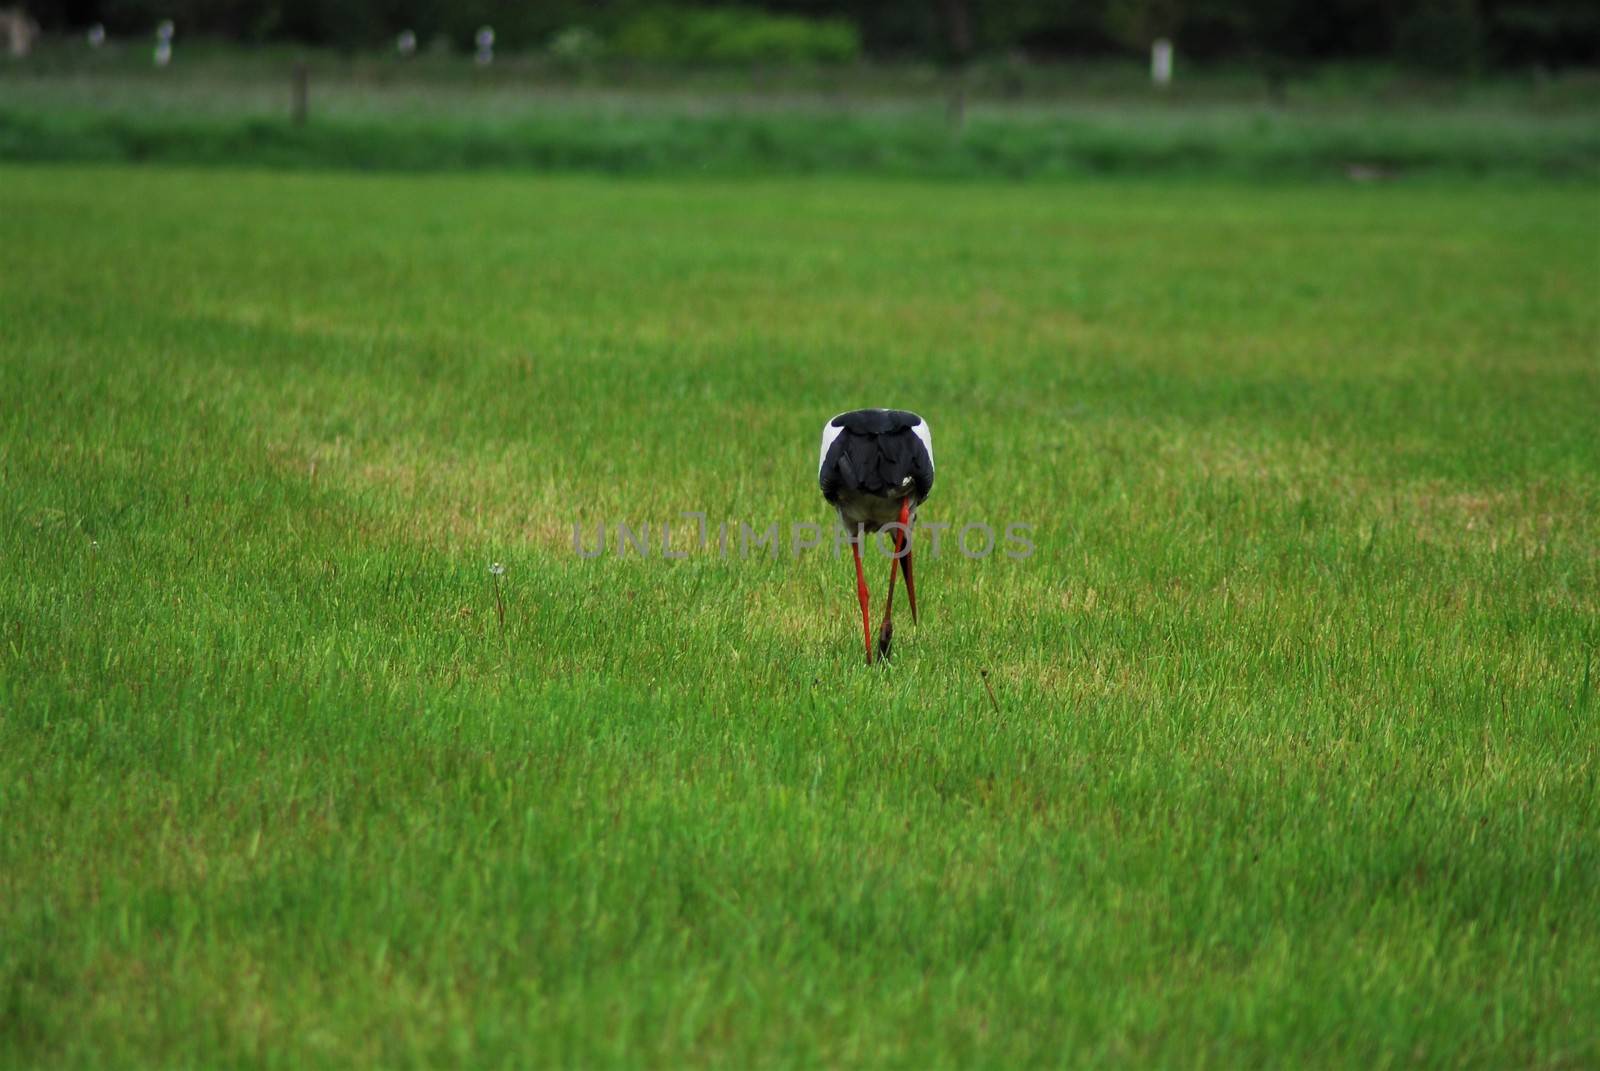 A white storck on a mown grenn pasture - rear view